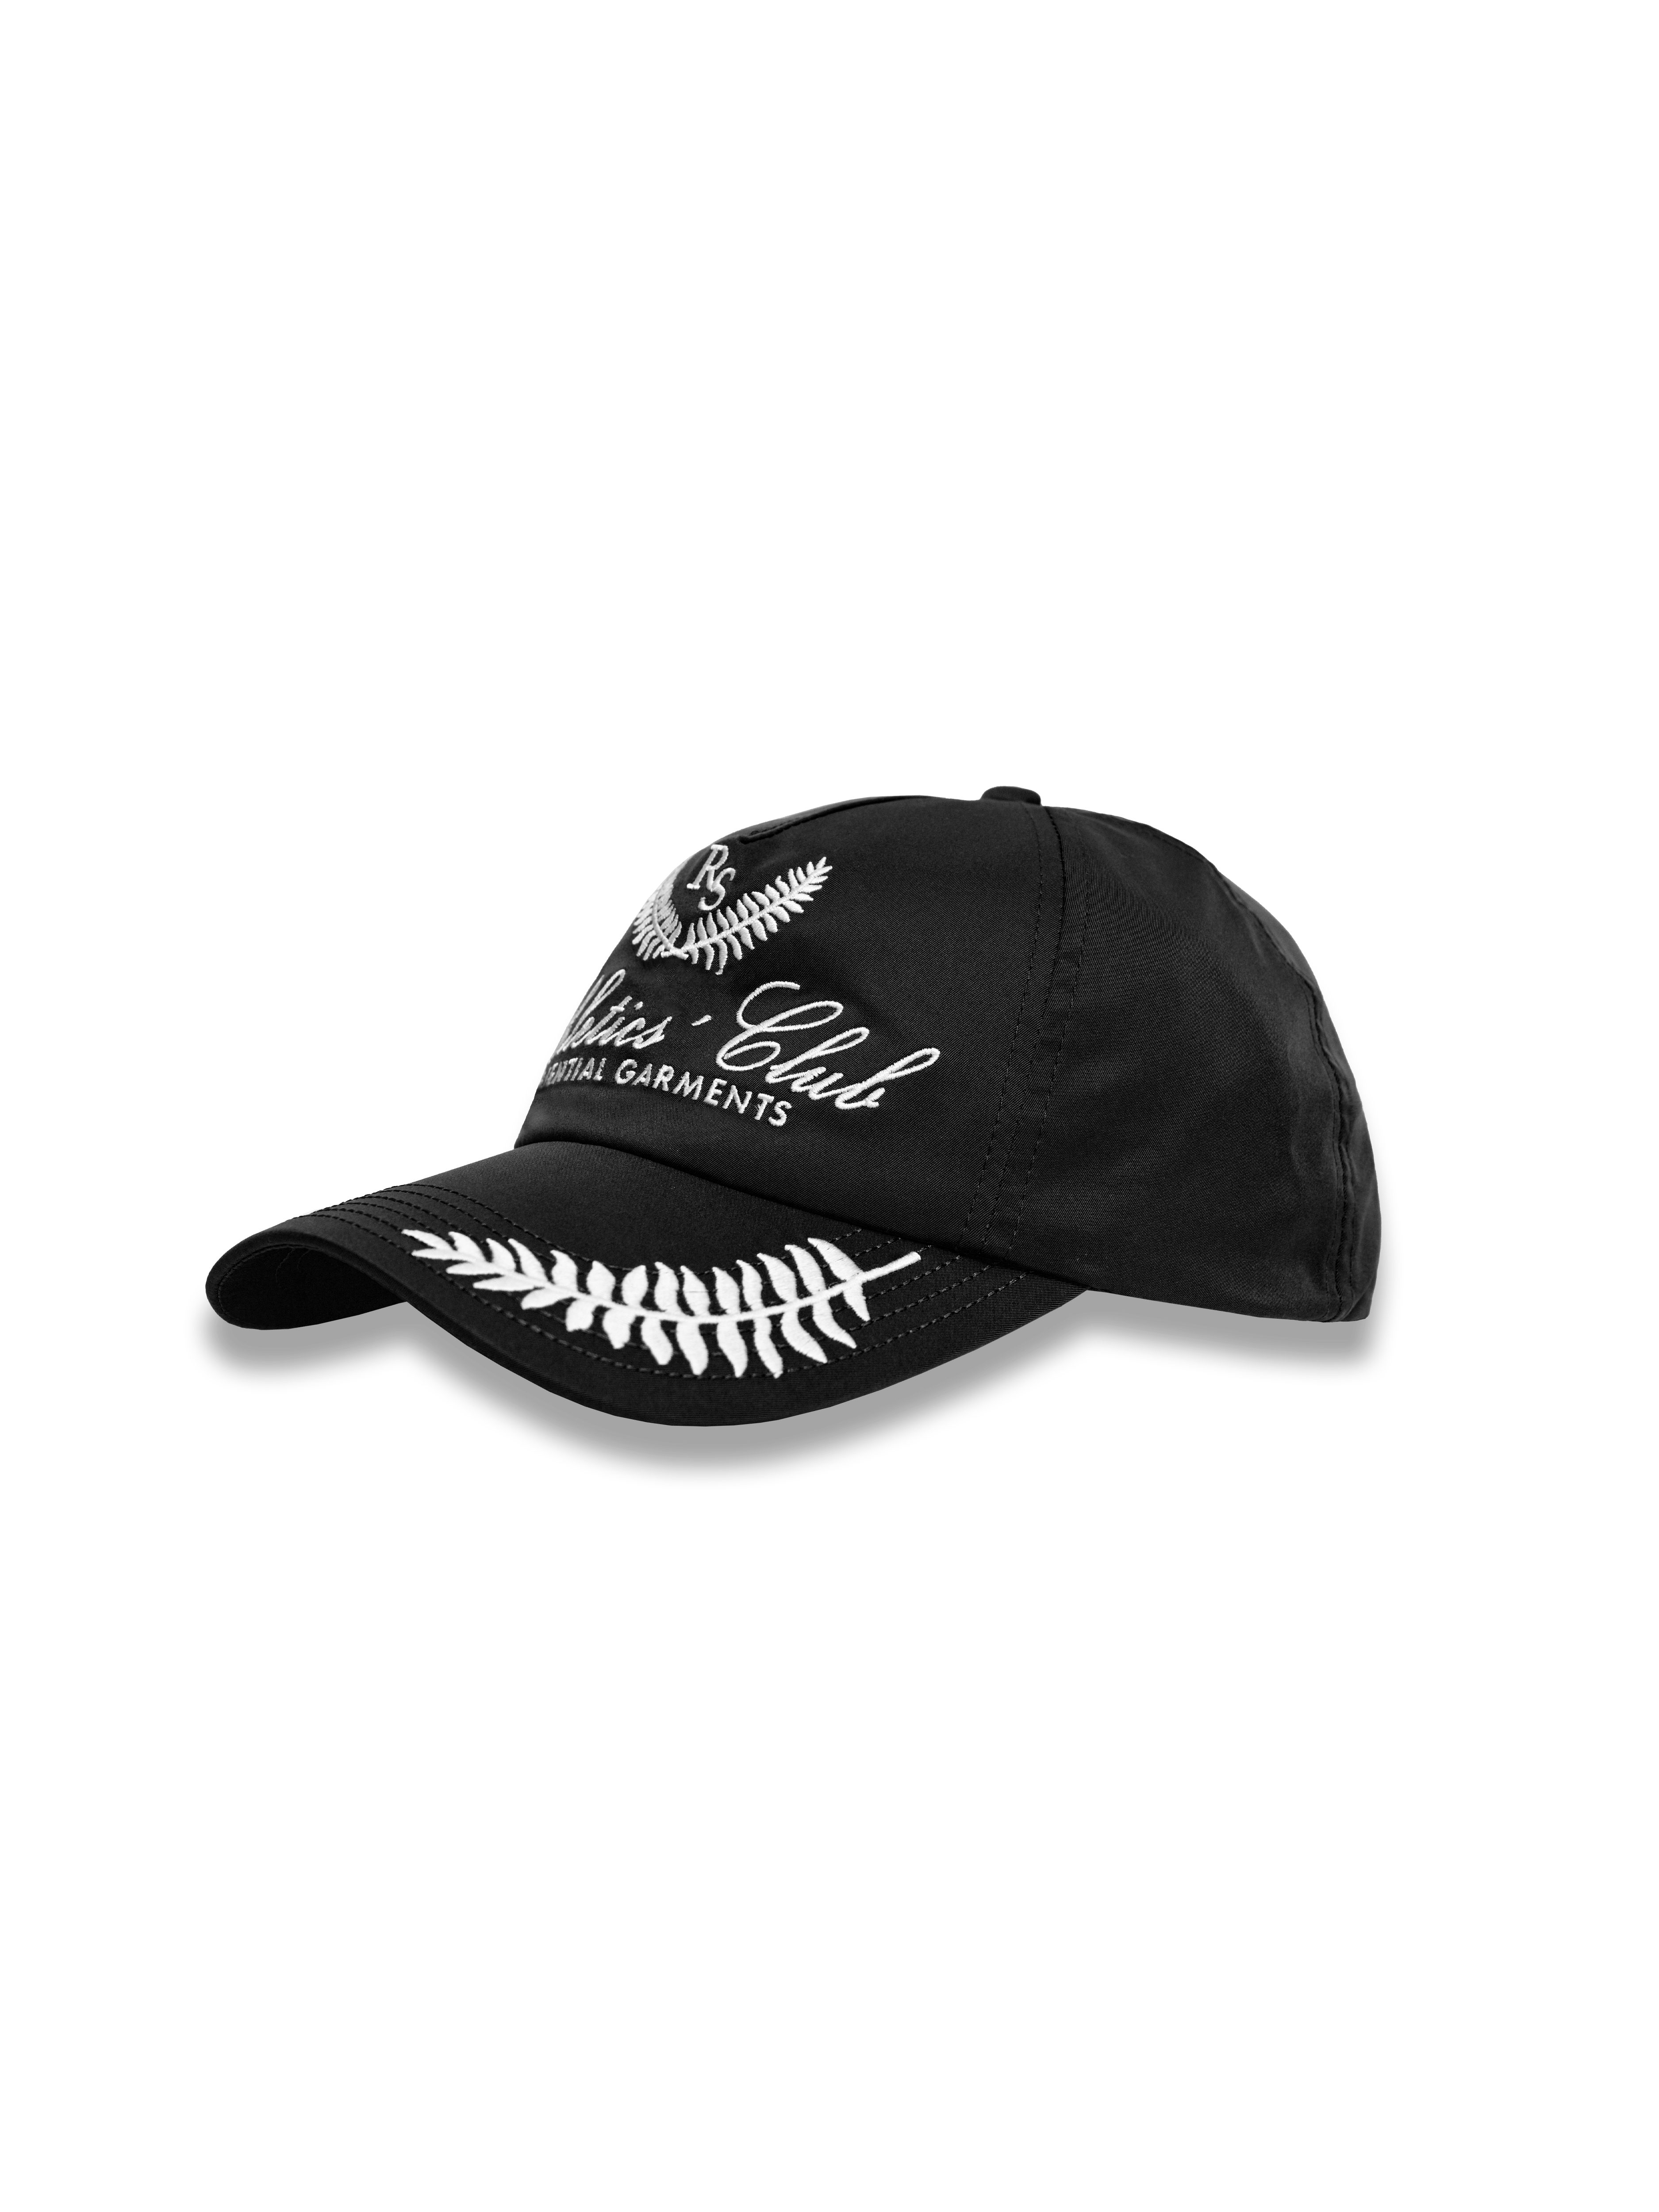 Athletic's Club Cap - Black